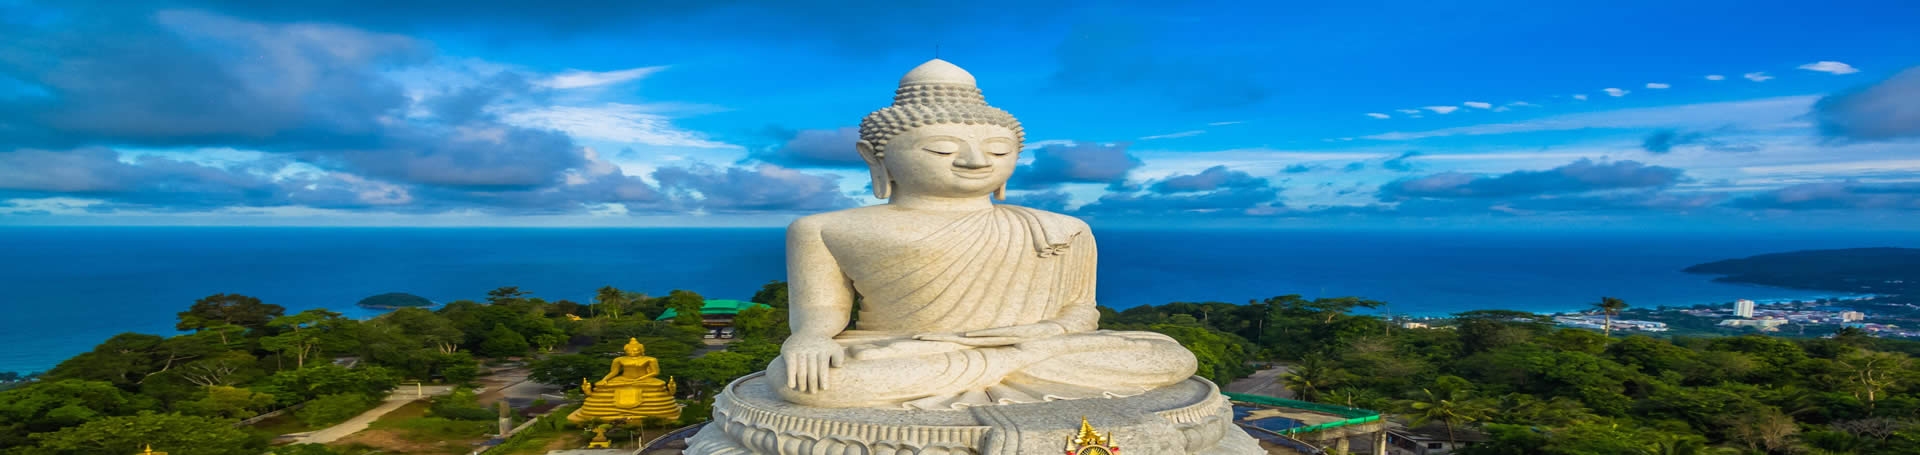 مجسمه بودا در تایلند